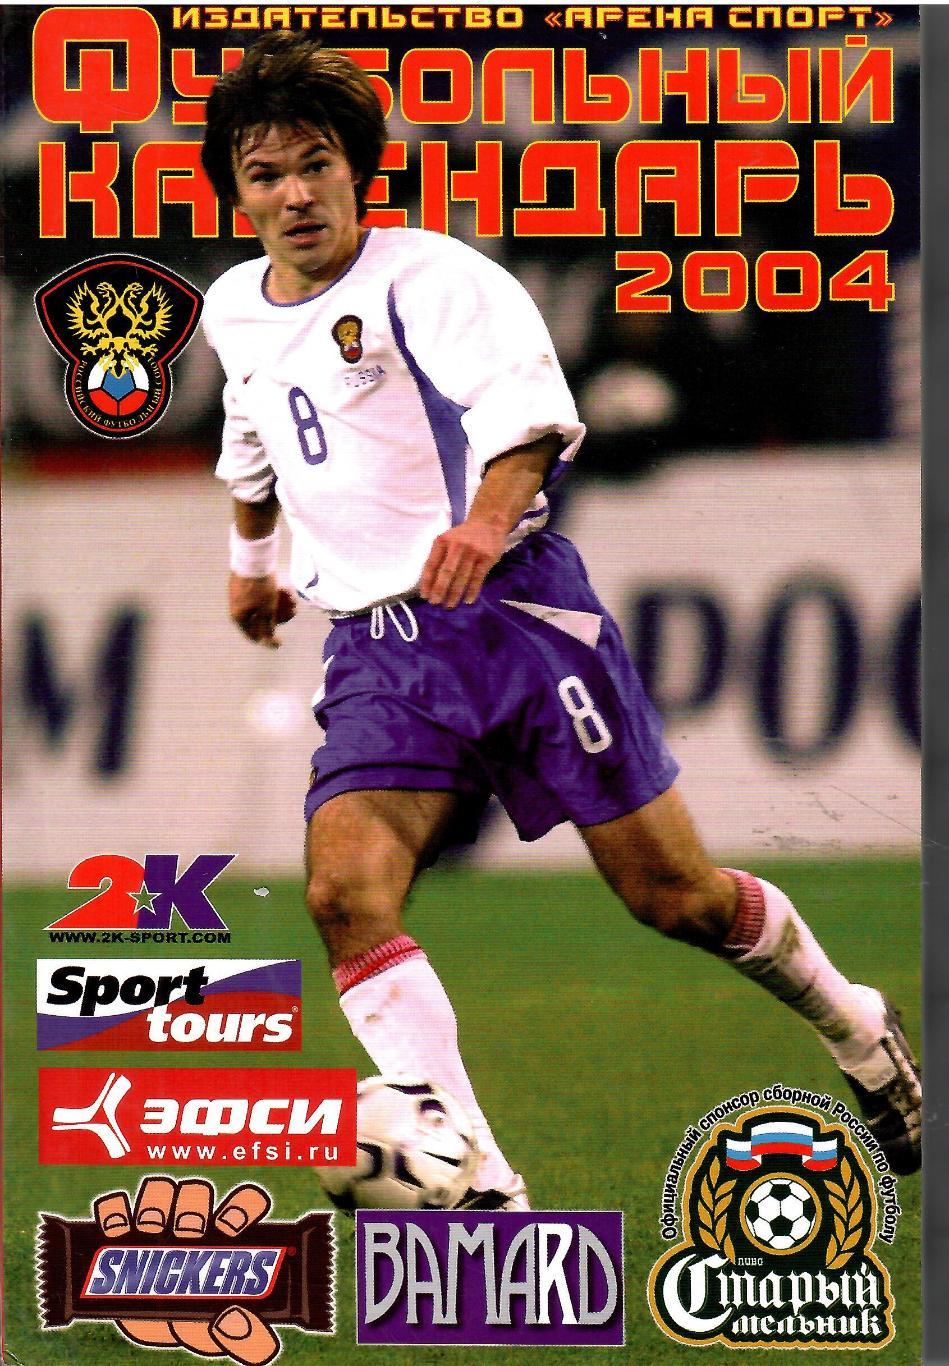 2004 Справочник Москва Арена спорт 128 стр